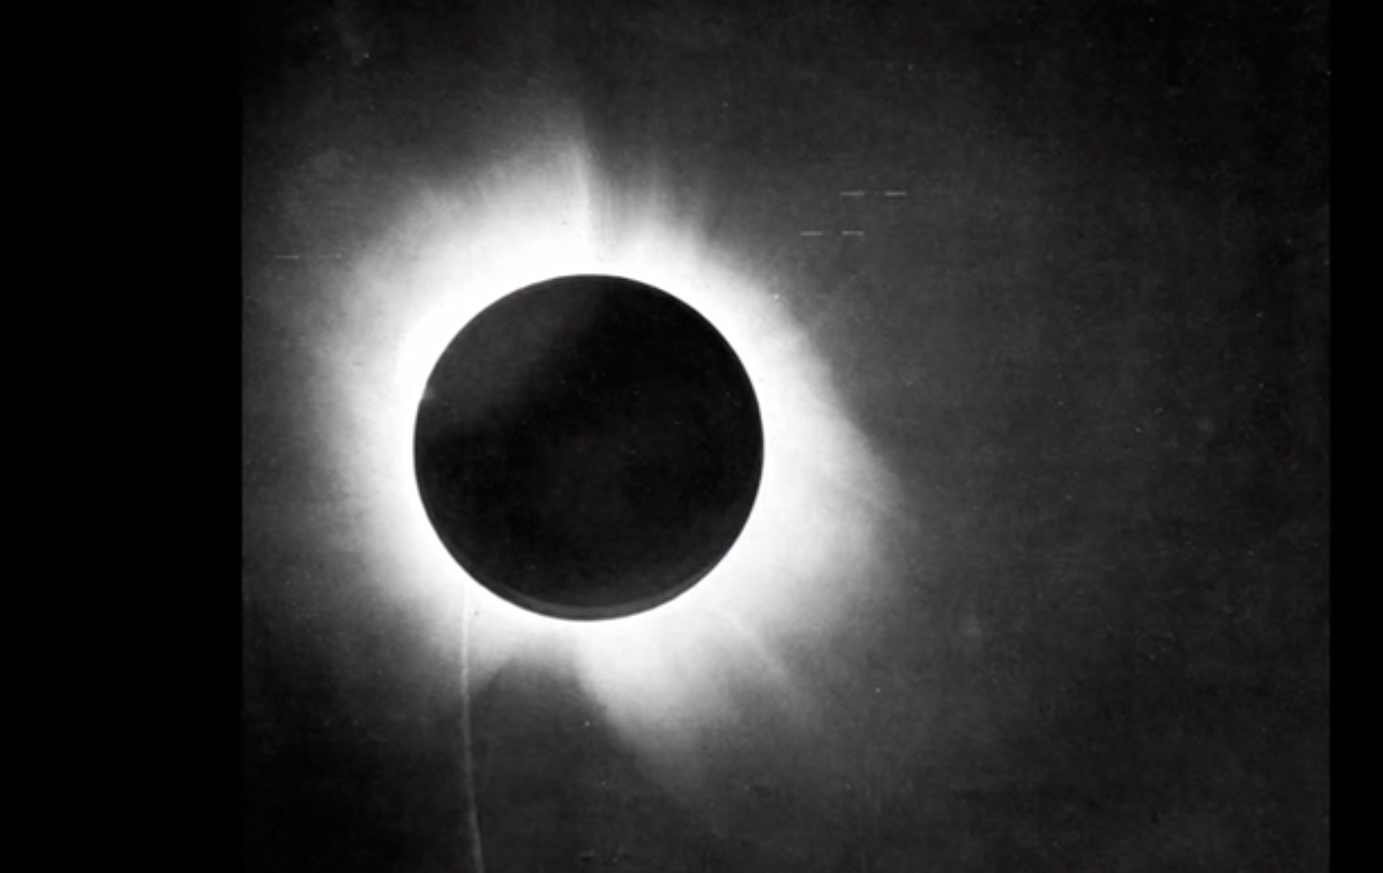 Céu da Semana: descubra como o eclipse solar de 1919 permitiu confirmar as previsões de Einstein